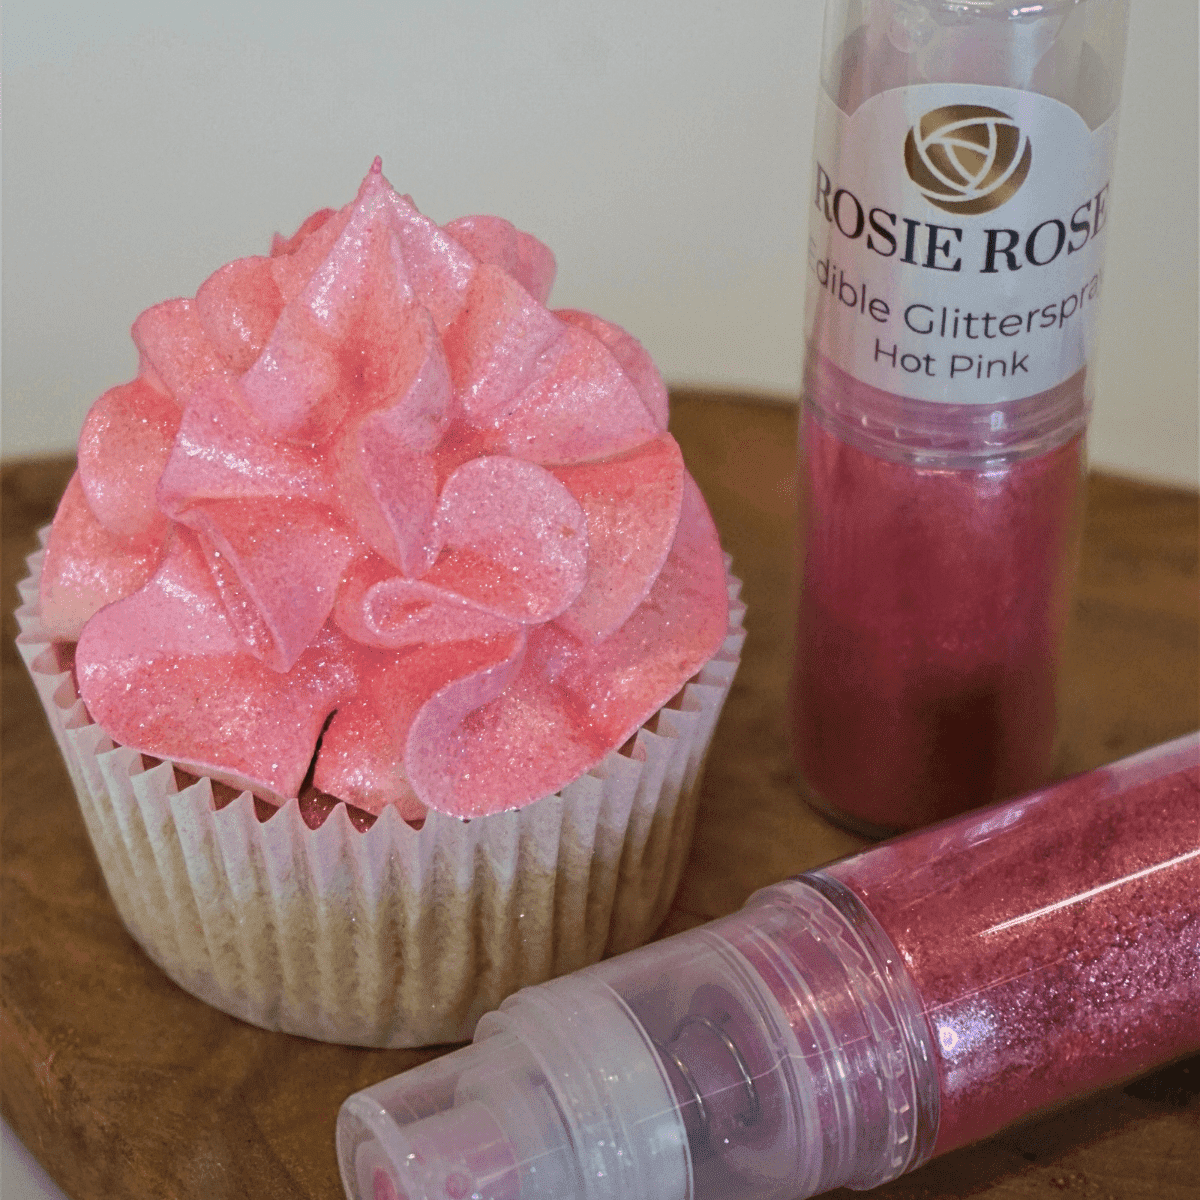 Veredeln Sie Ihre Backkunst mit unserem essbaren Glitterspray in Hot Pink ohne E171 in der Farbe Pink. Die pinke Farbe verleiht Ihren Desserts eine verspielte Ausstrahlung. Entdecken Sie bei ROSIE ROSE eine erlesene Auswahl an essbaren Blüten und Toppings, um Ihre Torten und Kuchen stilvoll zu dekorieren